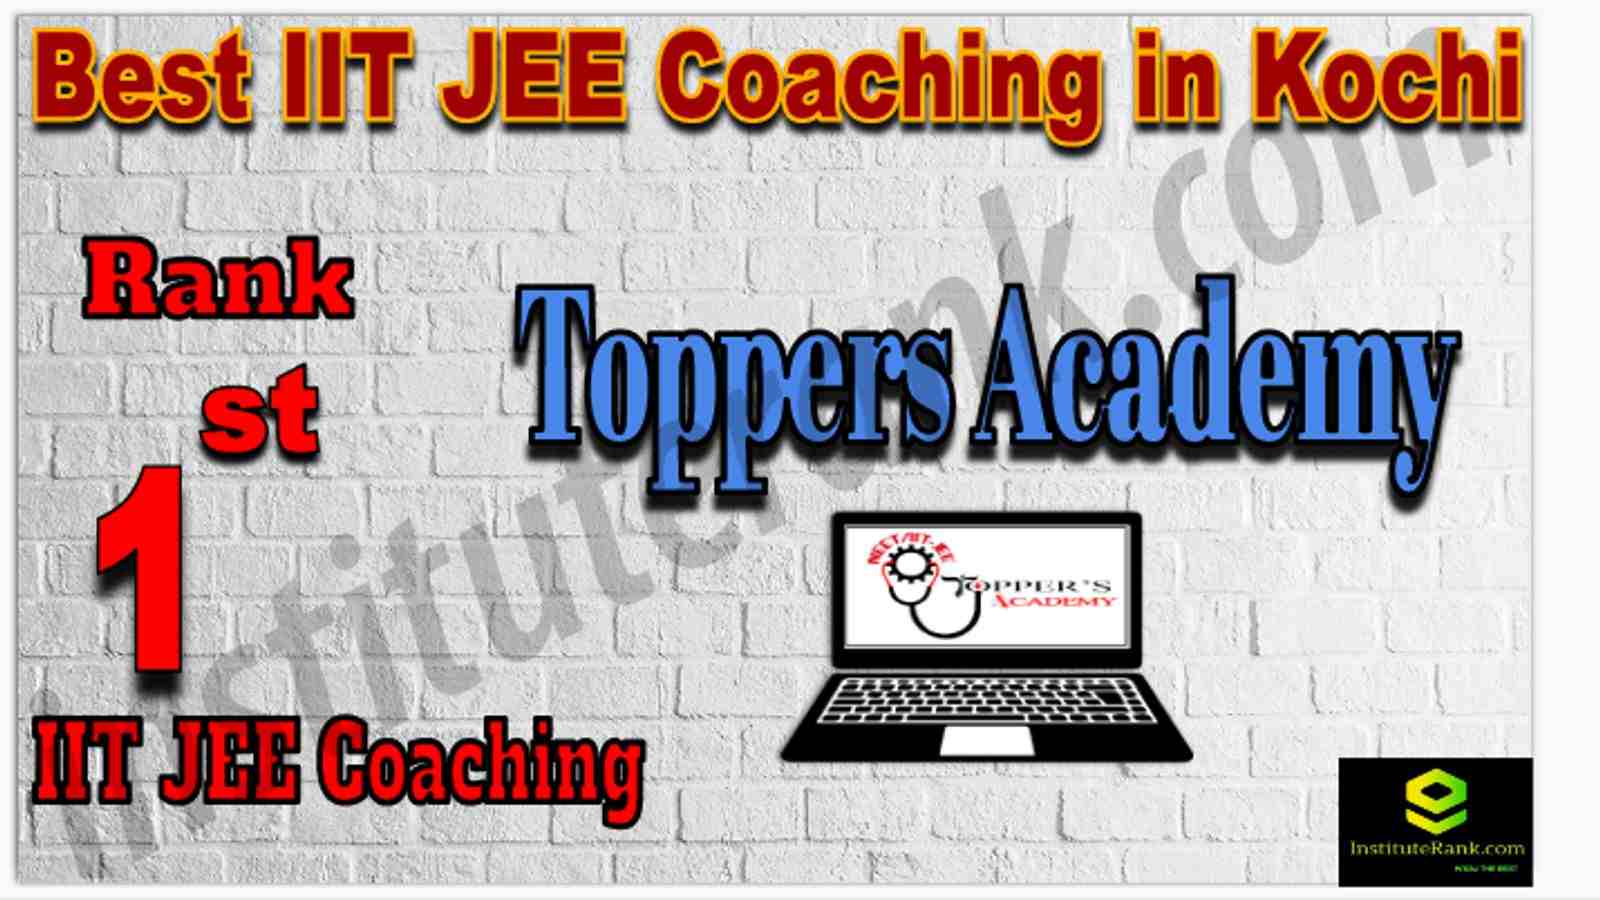 Rank 1st Best IIT JEE Coaching in Kochi